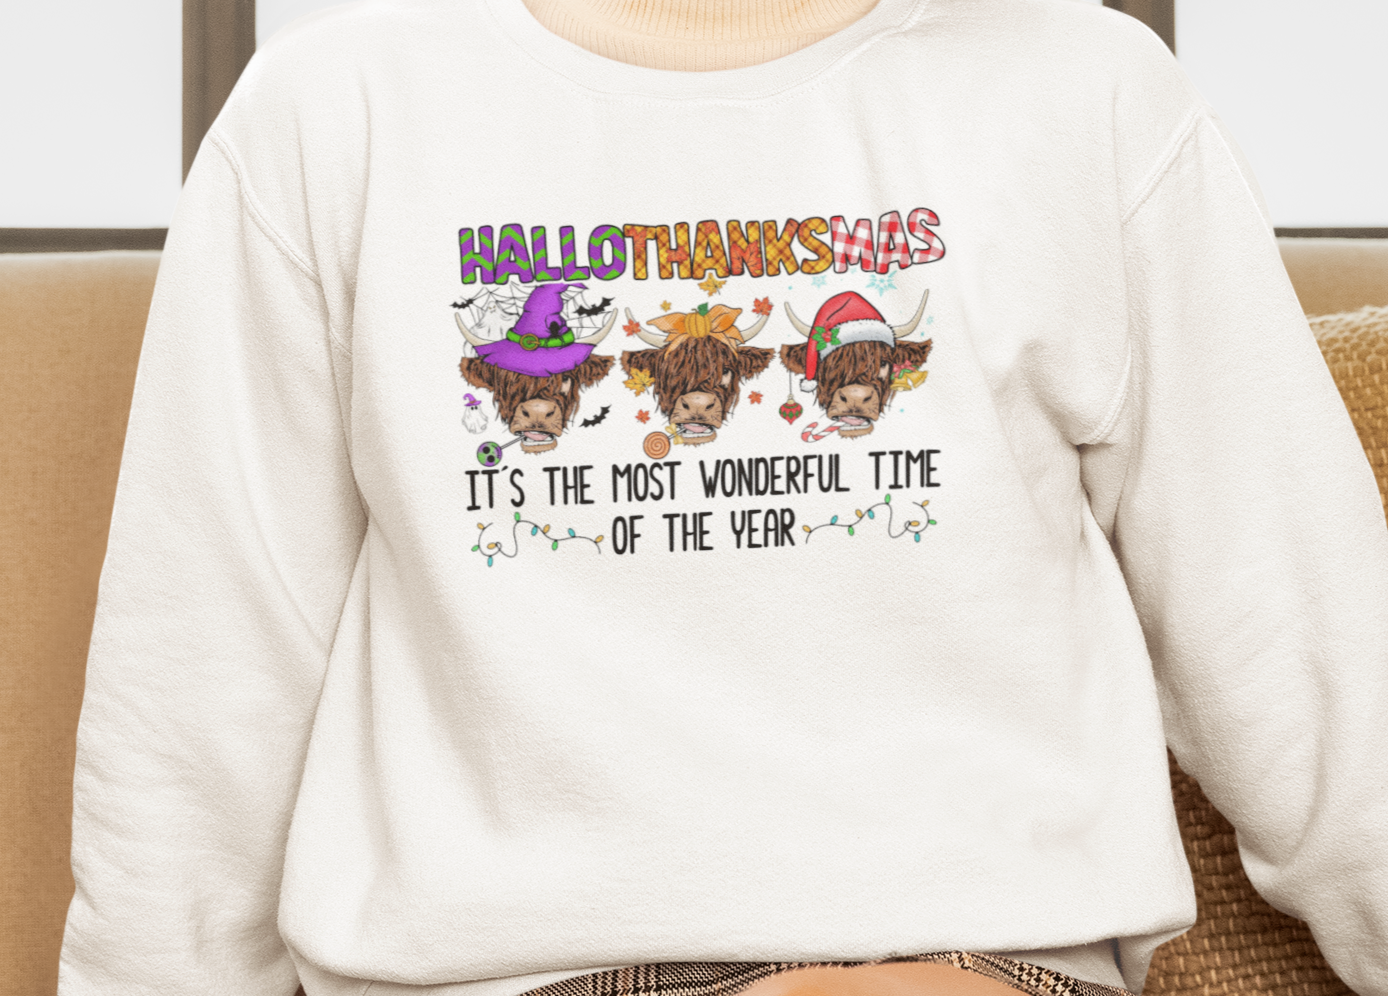 Hallothanksmas Cows Crewneck Pullover Sweatshirt